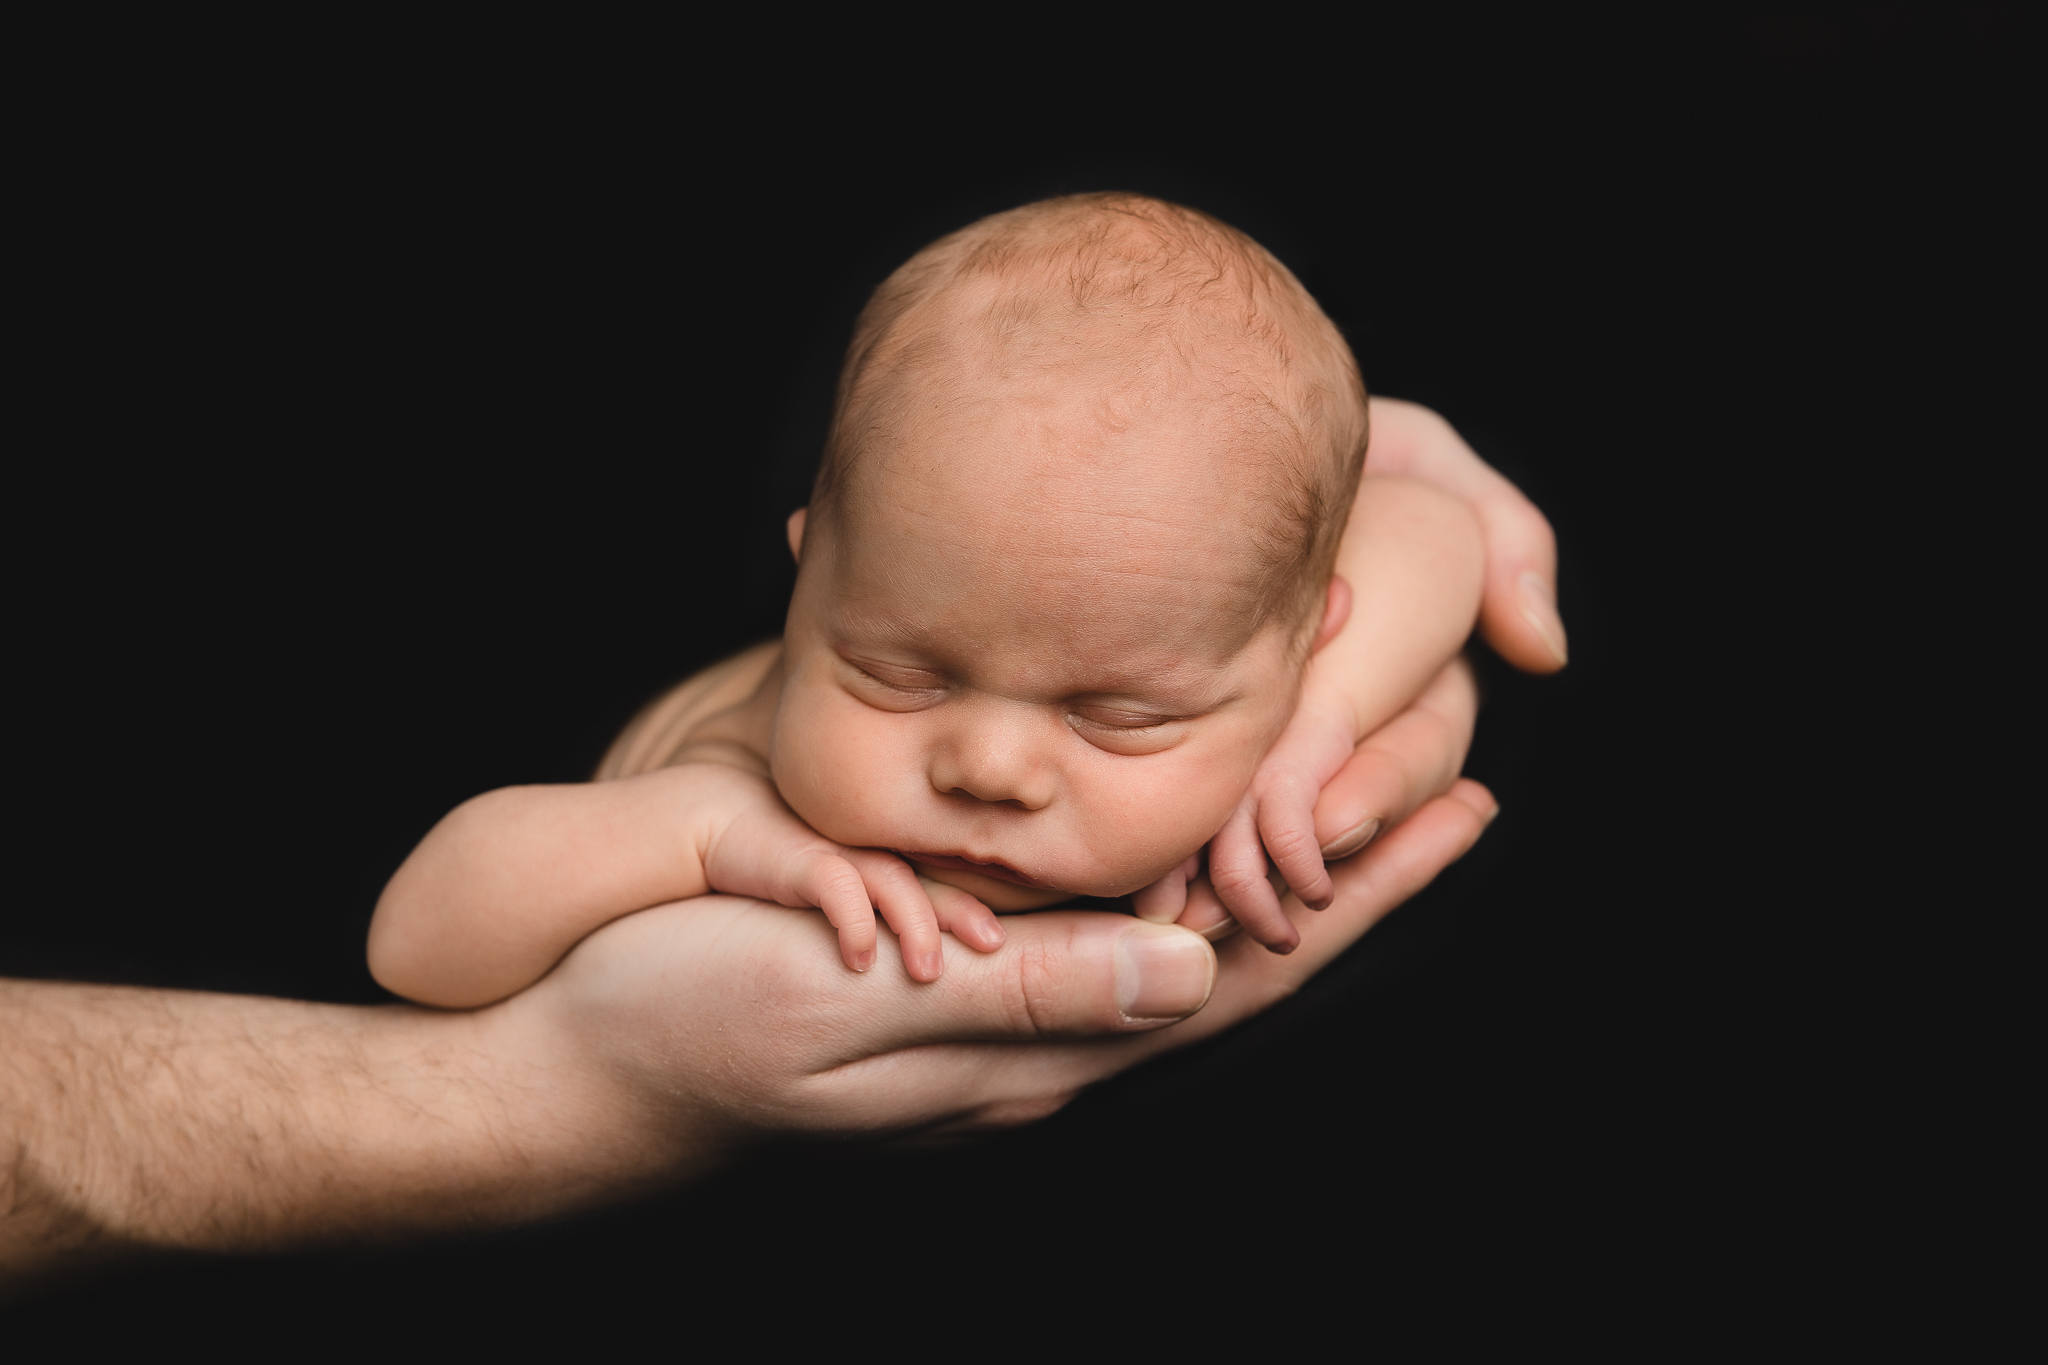 Newbornfotoshoot zwart wit baby in handen beverwijk castricum heiloo noord holland